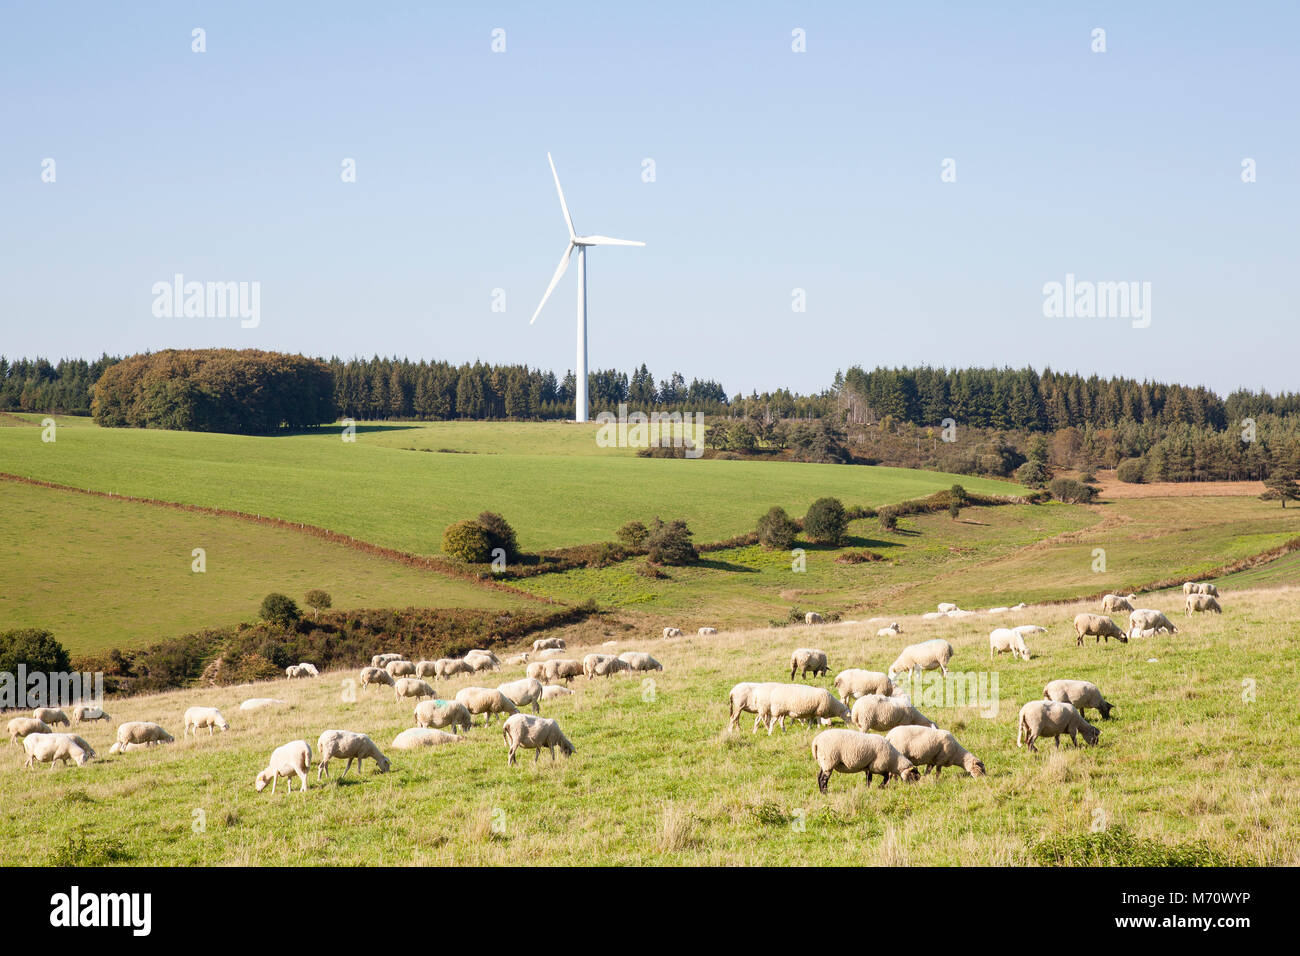 Große Herde Schafe weiden unterhalb einer Windkraftanlage liefern erneuerbare Energie in einem Konzept der nachhaltigen Landwirtschaft und Industrie und der Nutzung der Natur Stockfoto